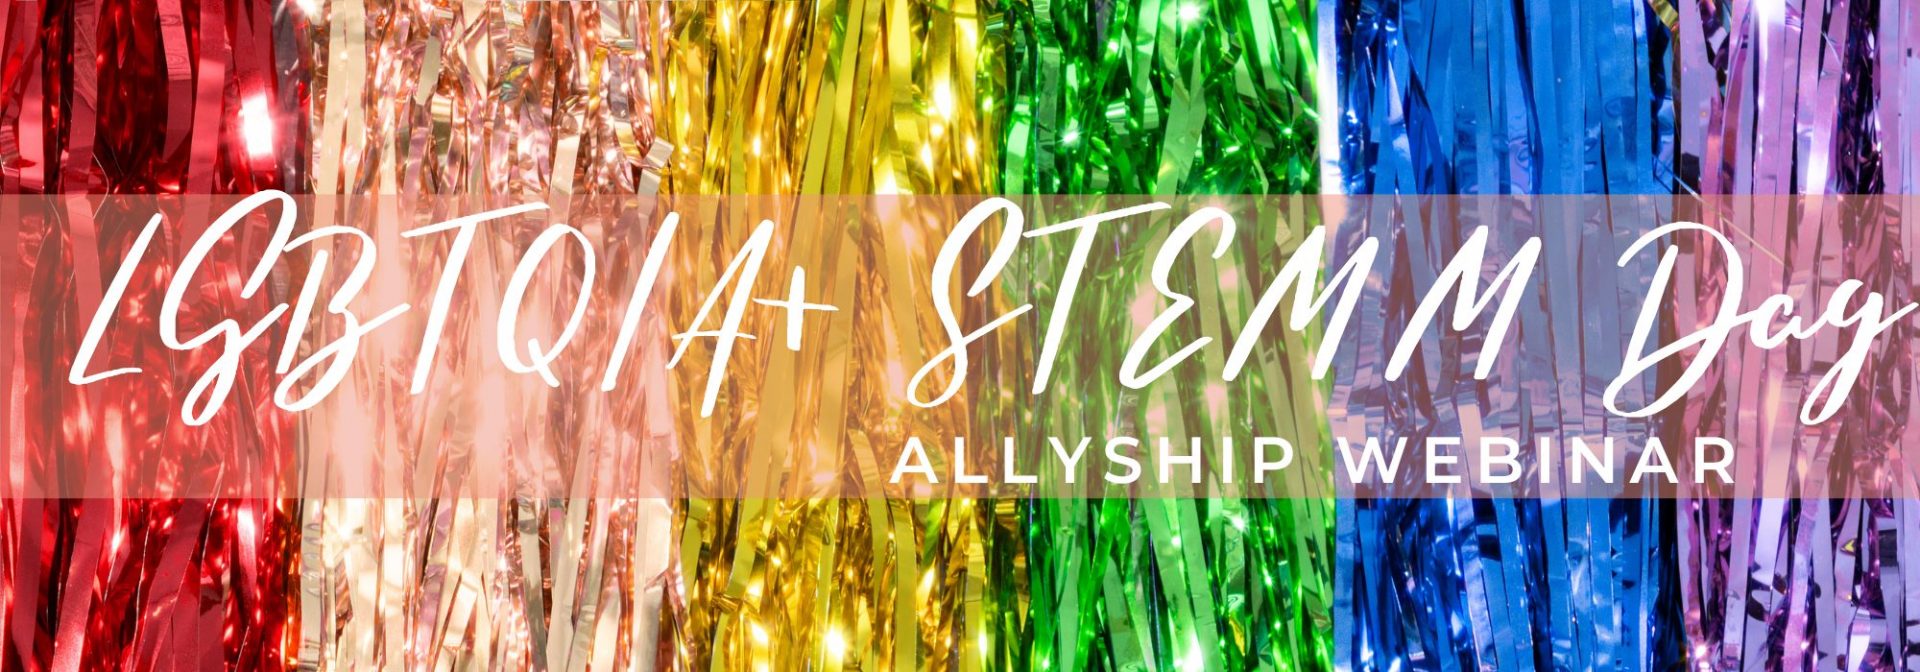 LGBTQIA+ STEMM Day Allyship Webinar